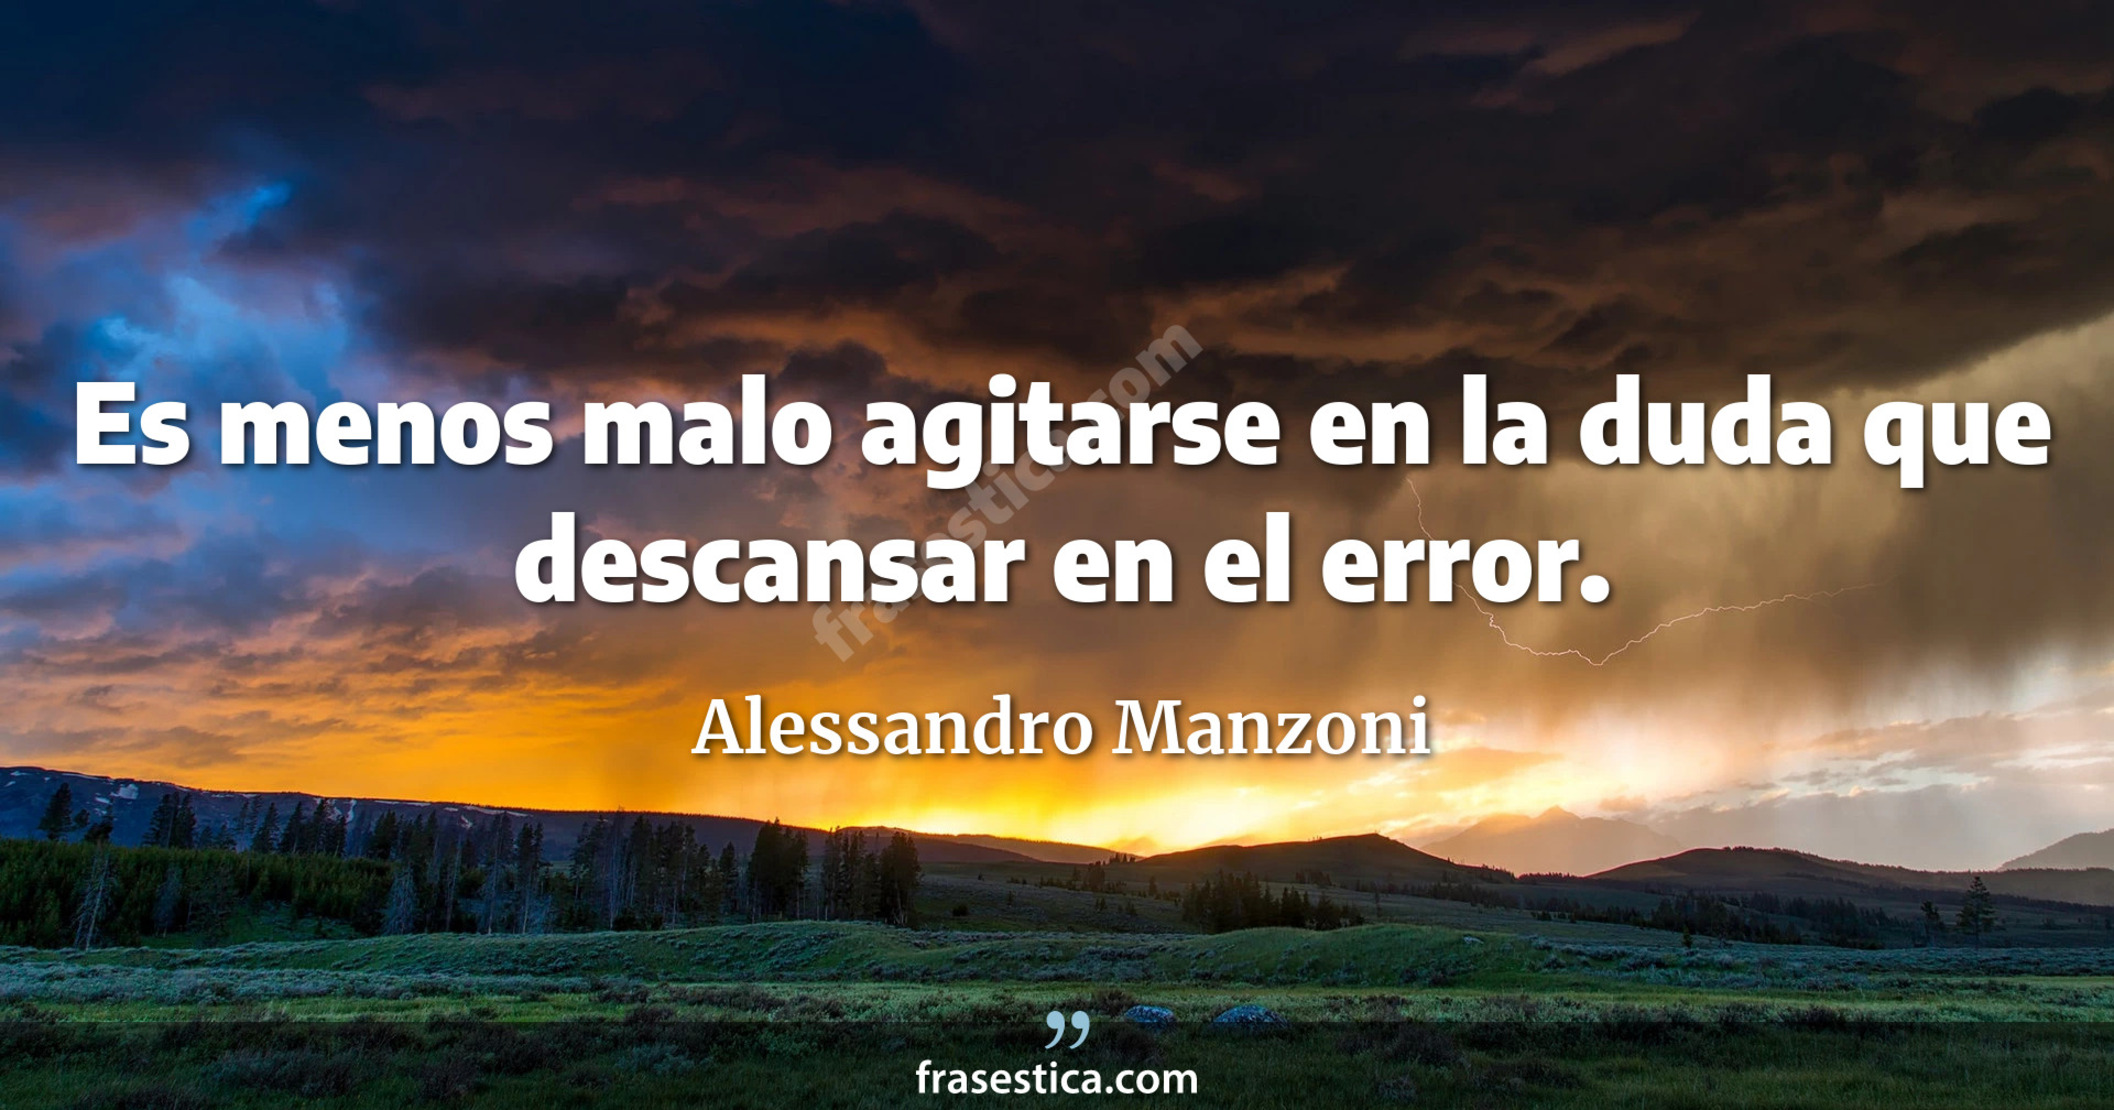 Es menos malo agitarse en la duda que descansar en el error. - Alessandro Manzoni